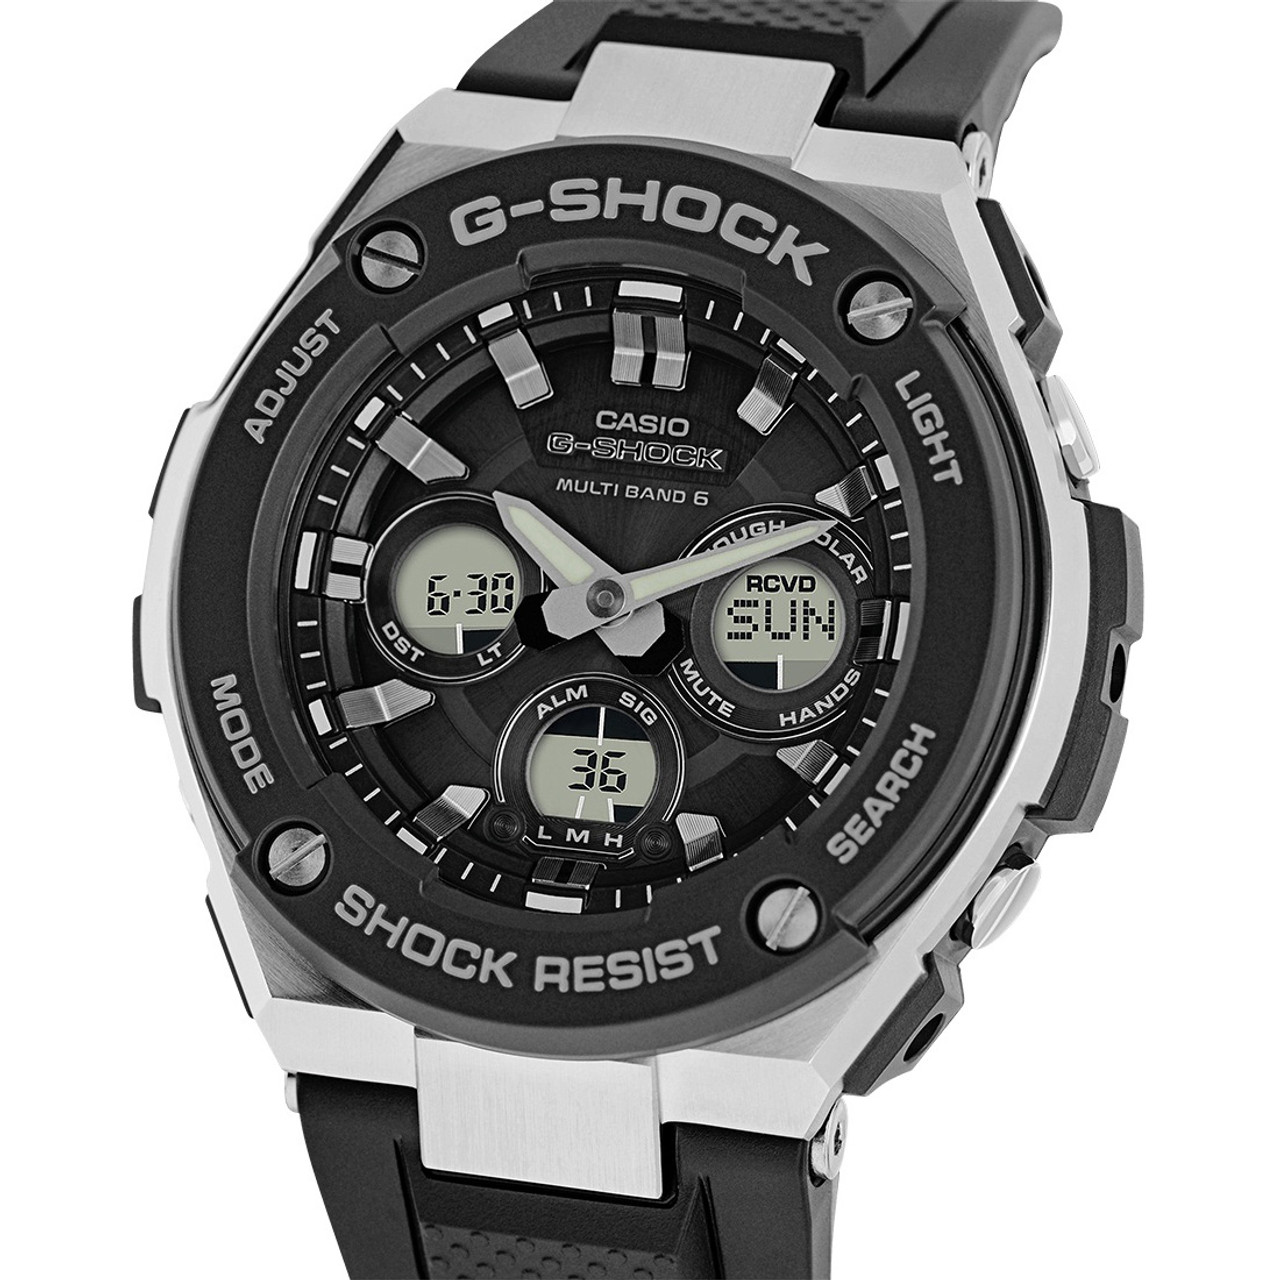 Casio G-shock Tough Solar Radio Controlled Watch GST-W300-1AER